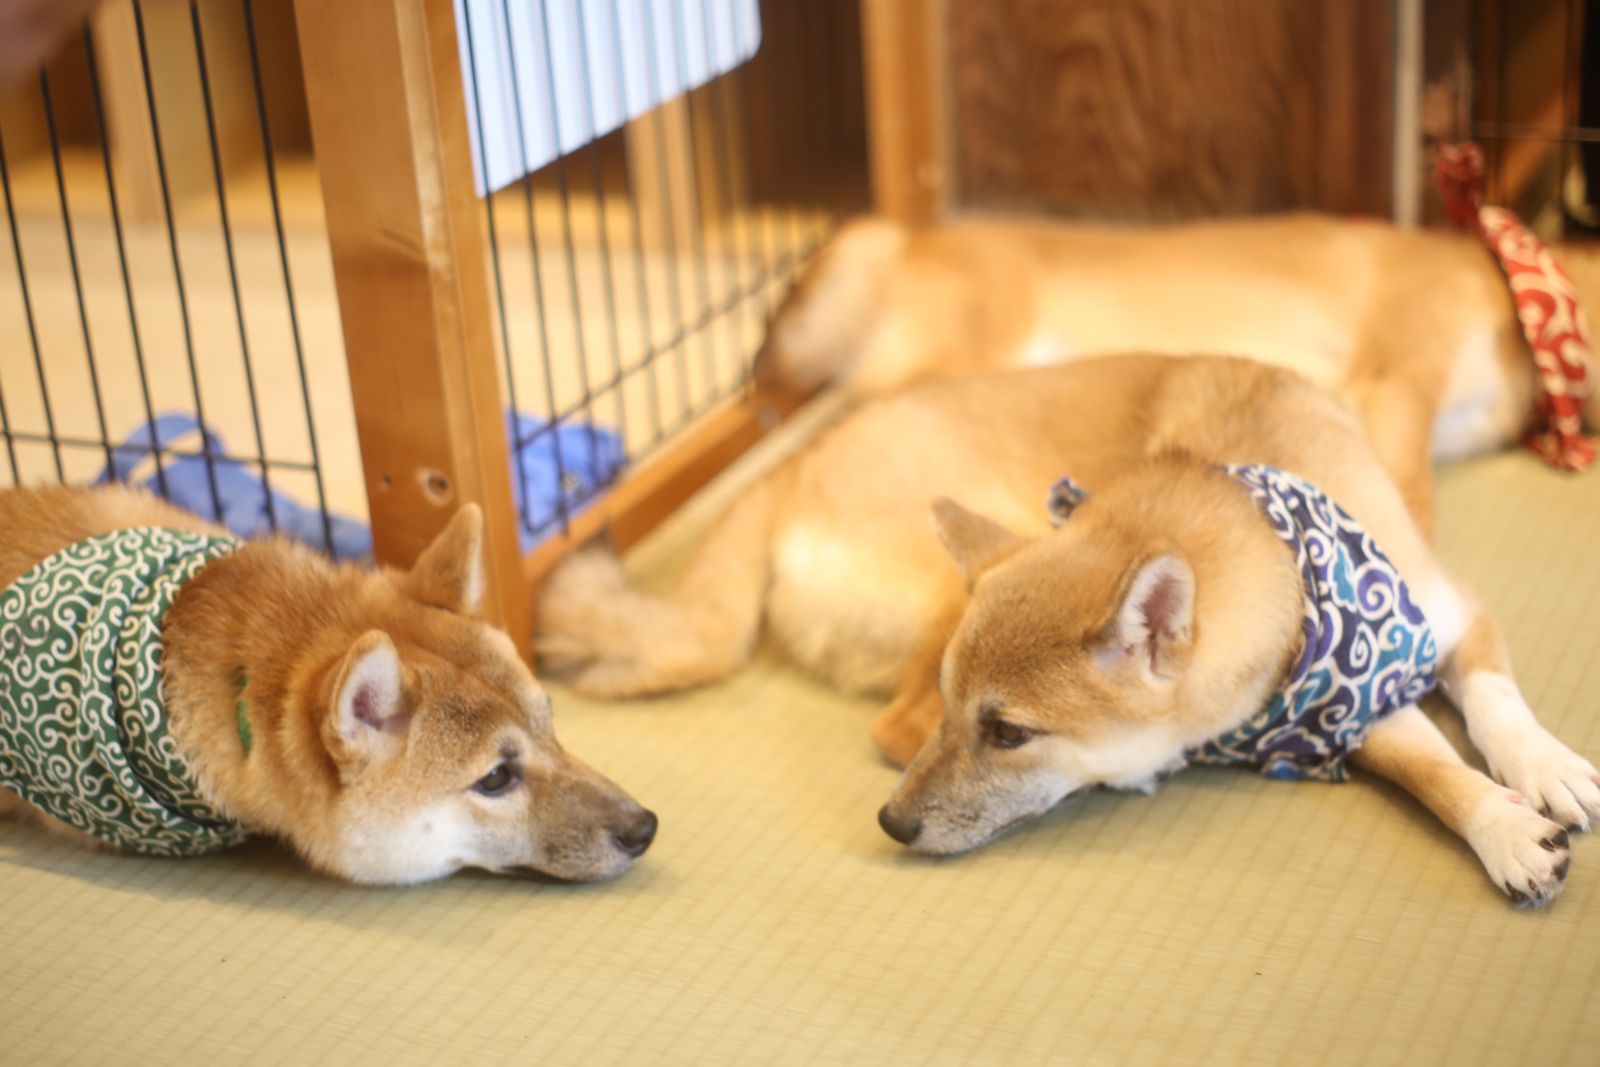 メイン画像 癒しが足りないあなたへ 東京都内の犬カフェ 犬と触れ合える場所10選 Retrip リトリップ